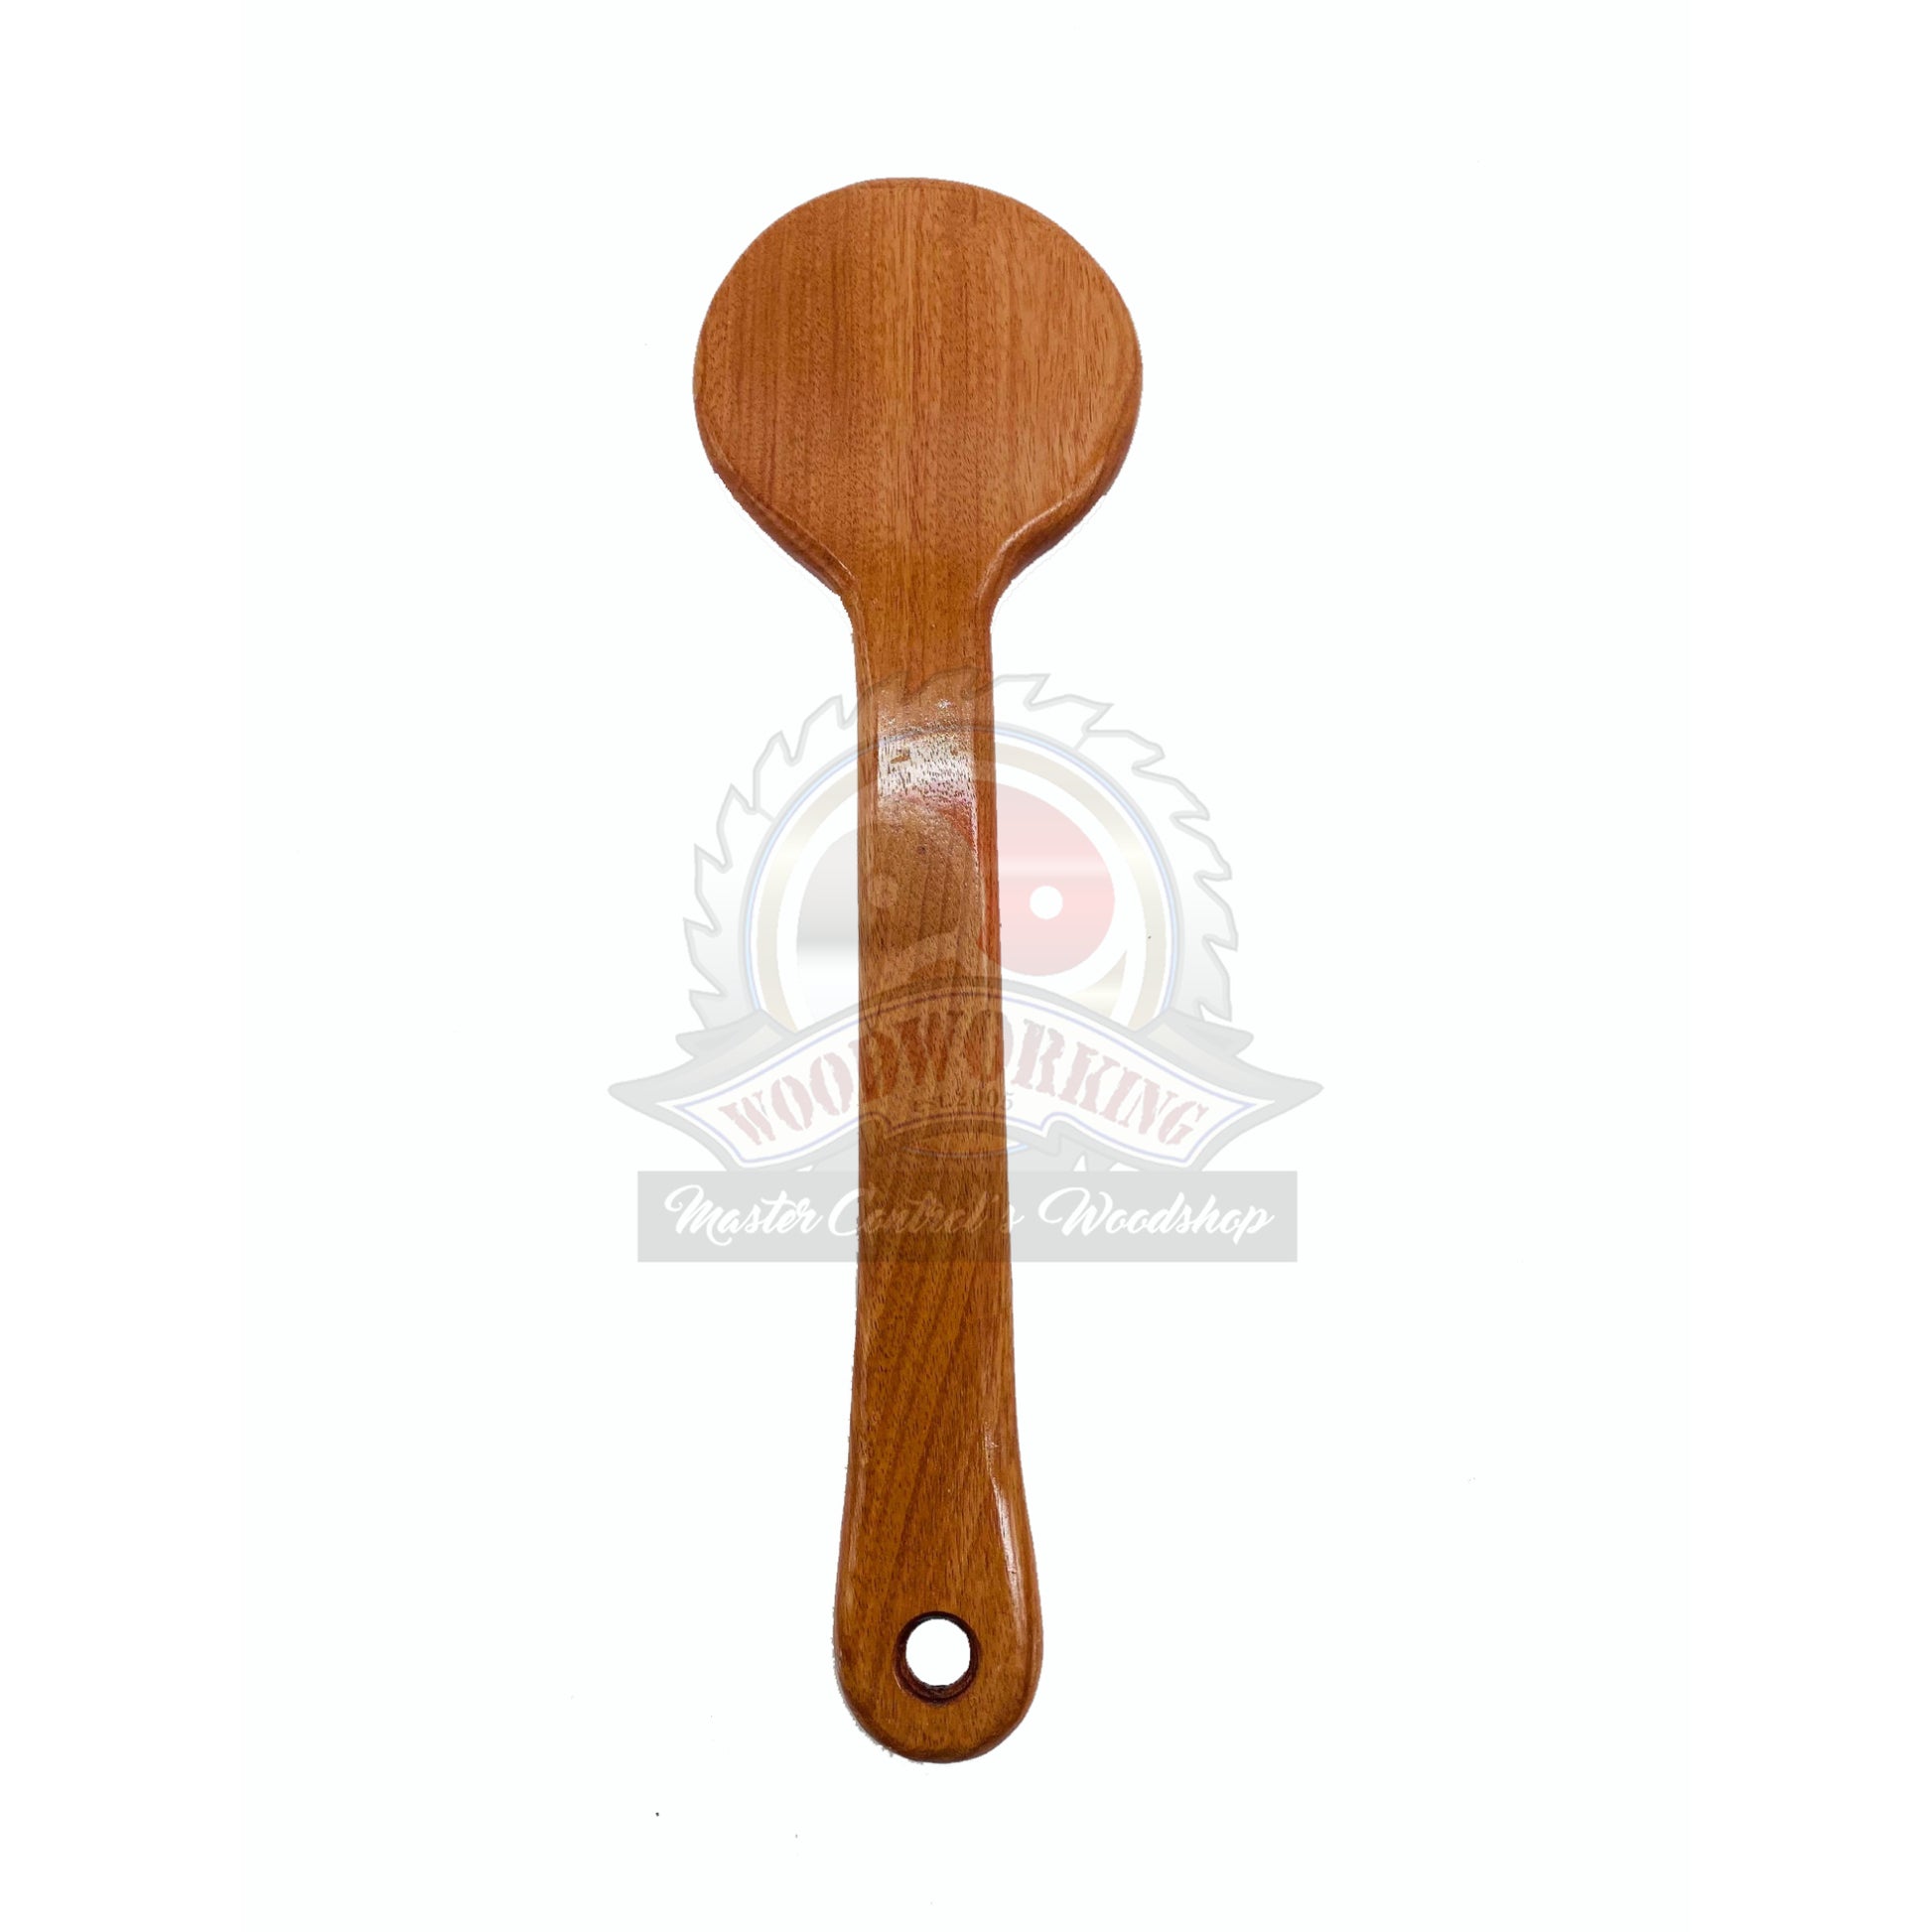 Hardwood Lollipop OTK Spanking Paddle, hardwood paddle, wood paddle, paddle, spanking paddle, paddle, bdsm, impact, punishment, discipline